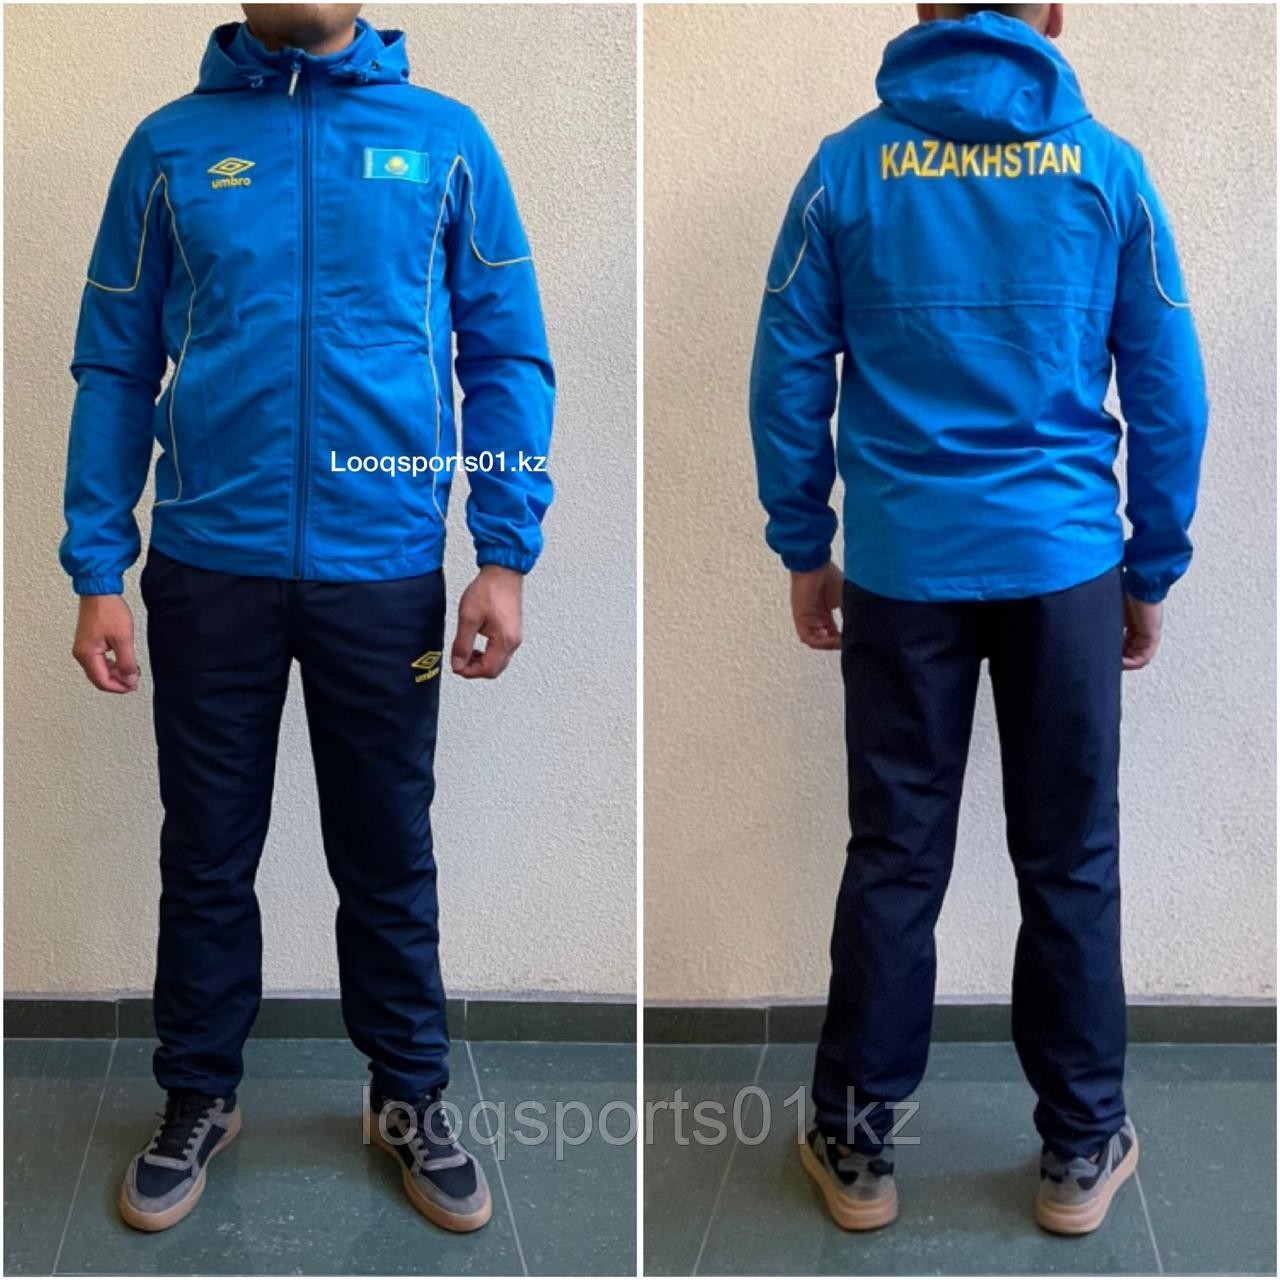 Мужские спортивные костюмы (спортивка) Umbro Казахстан (055)